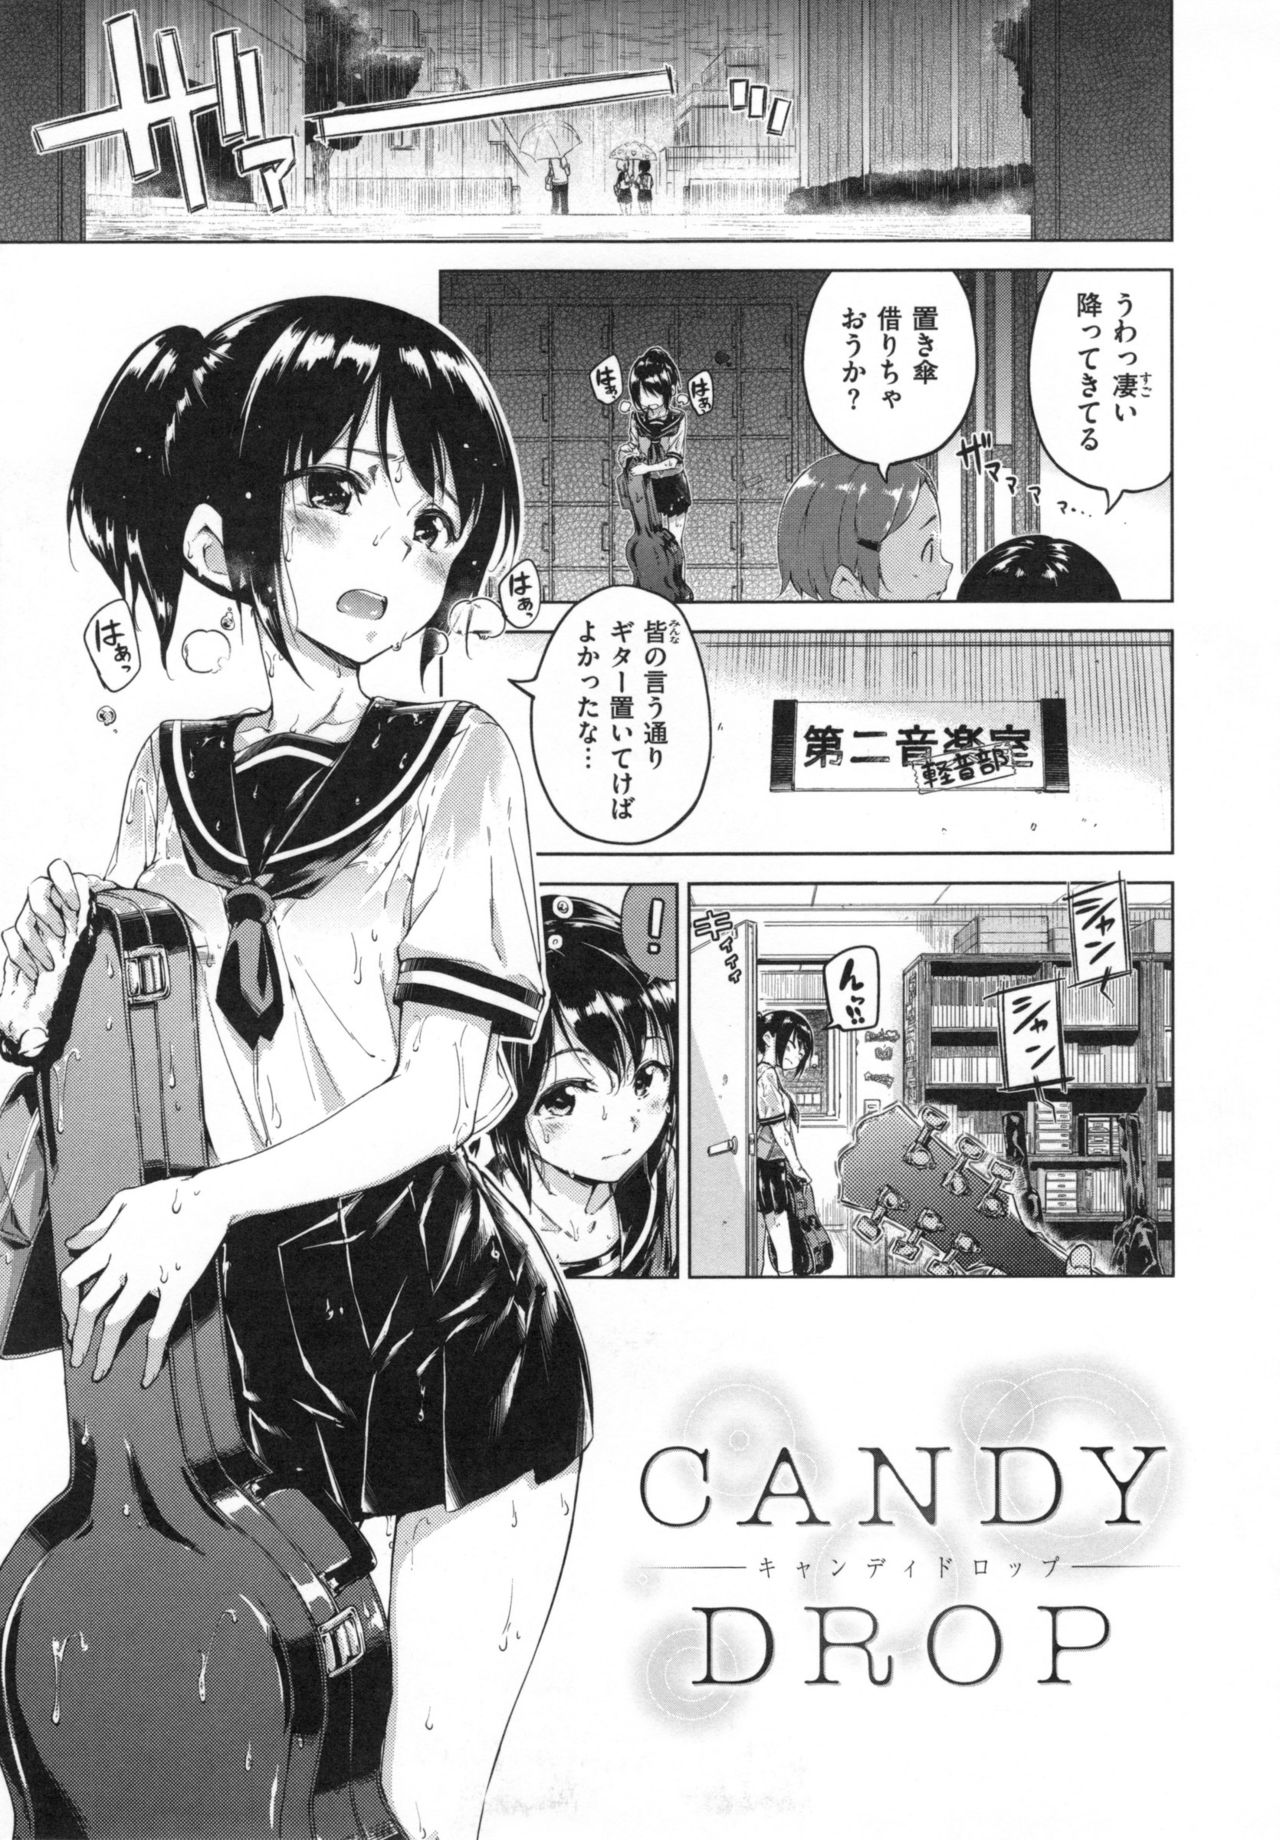 [Hamao] キャンディドロップ + とらのあなリーフレット